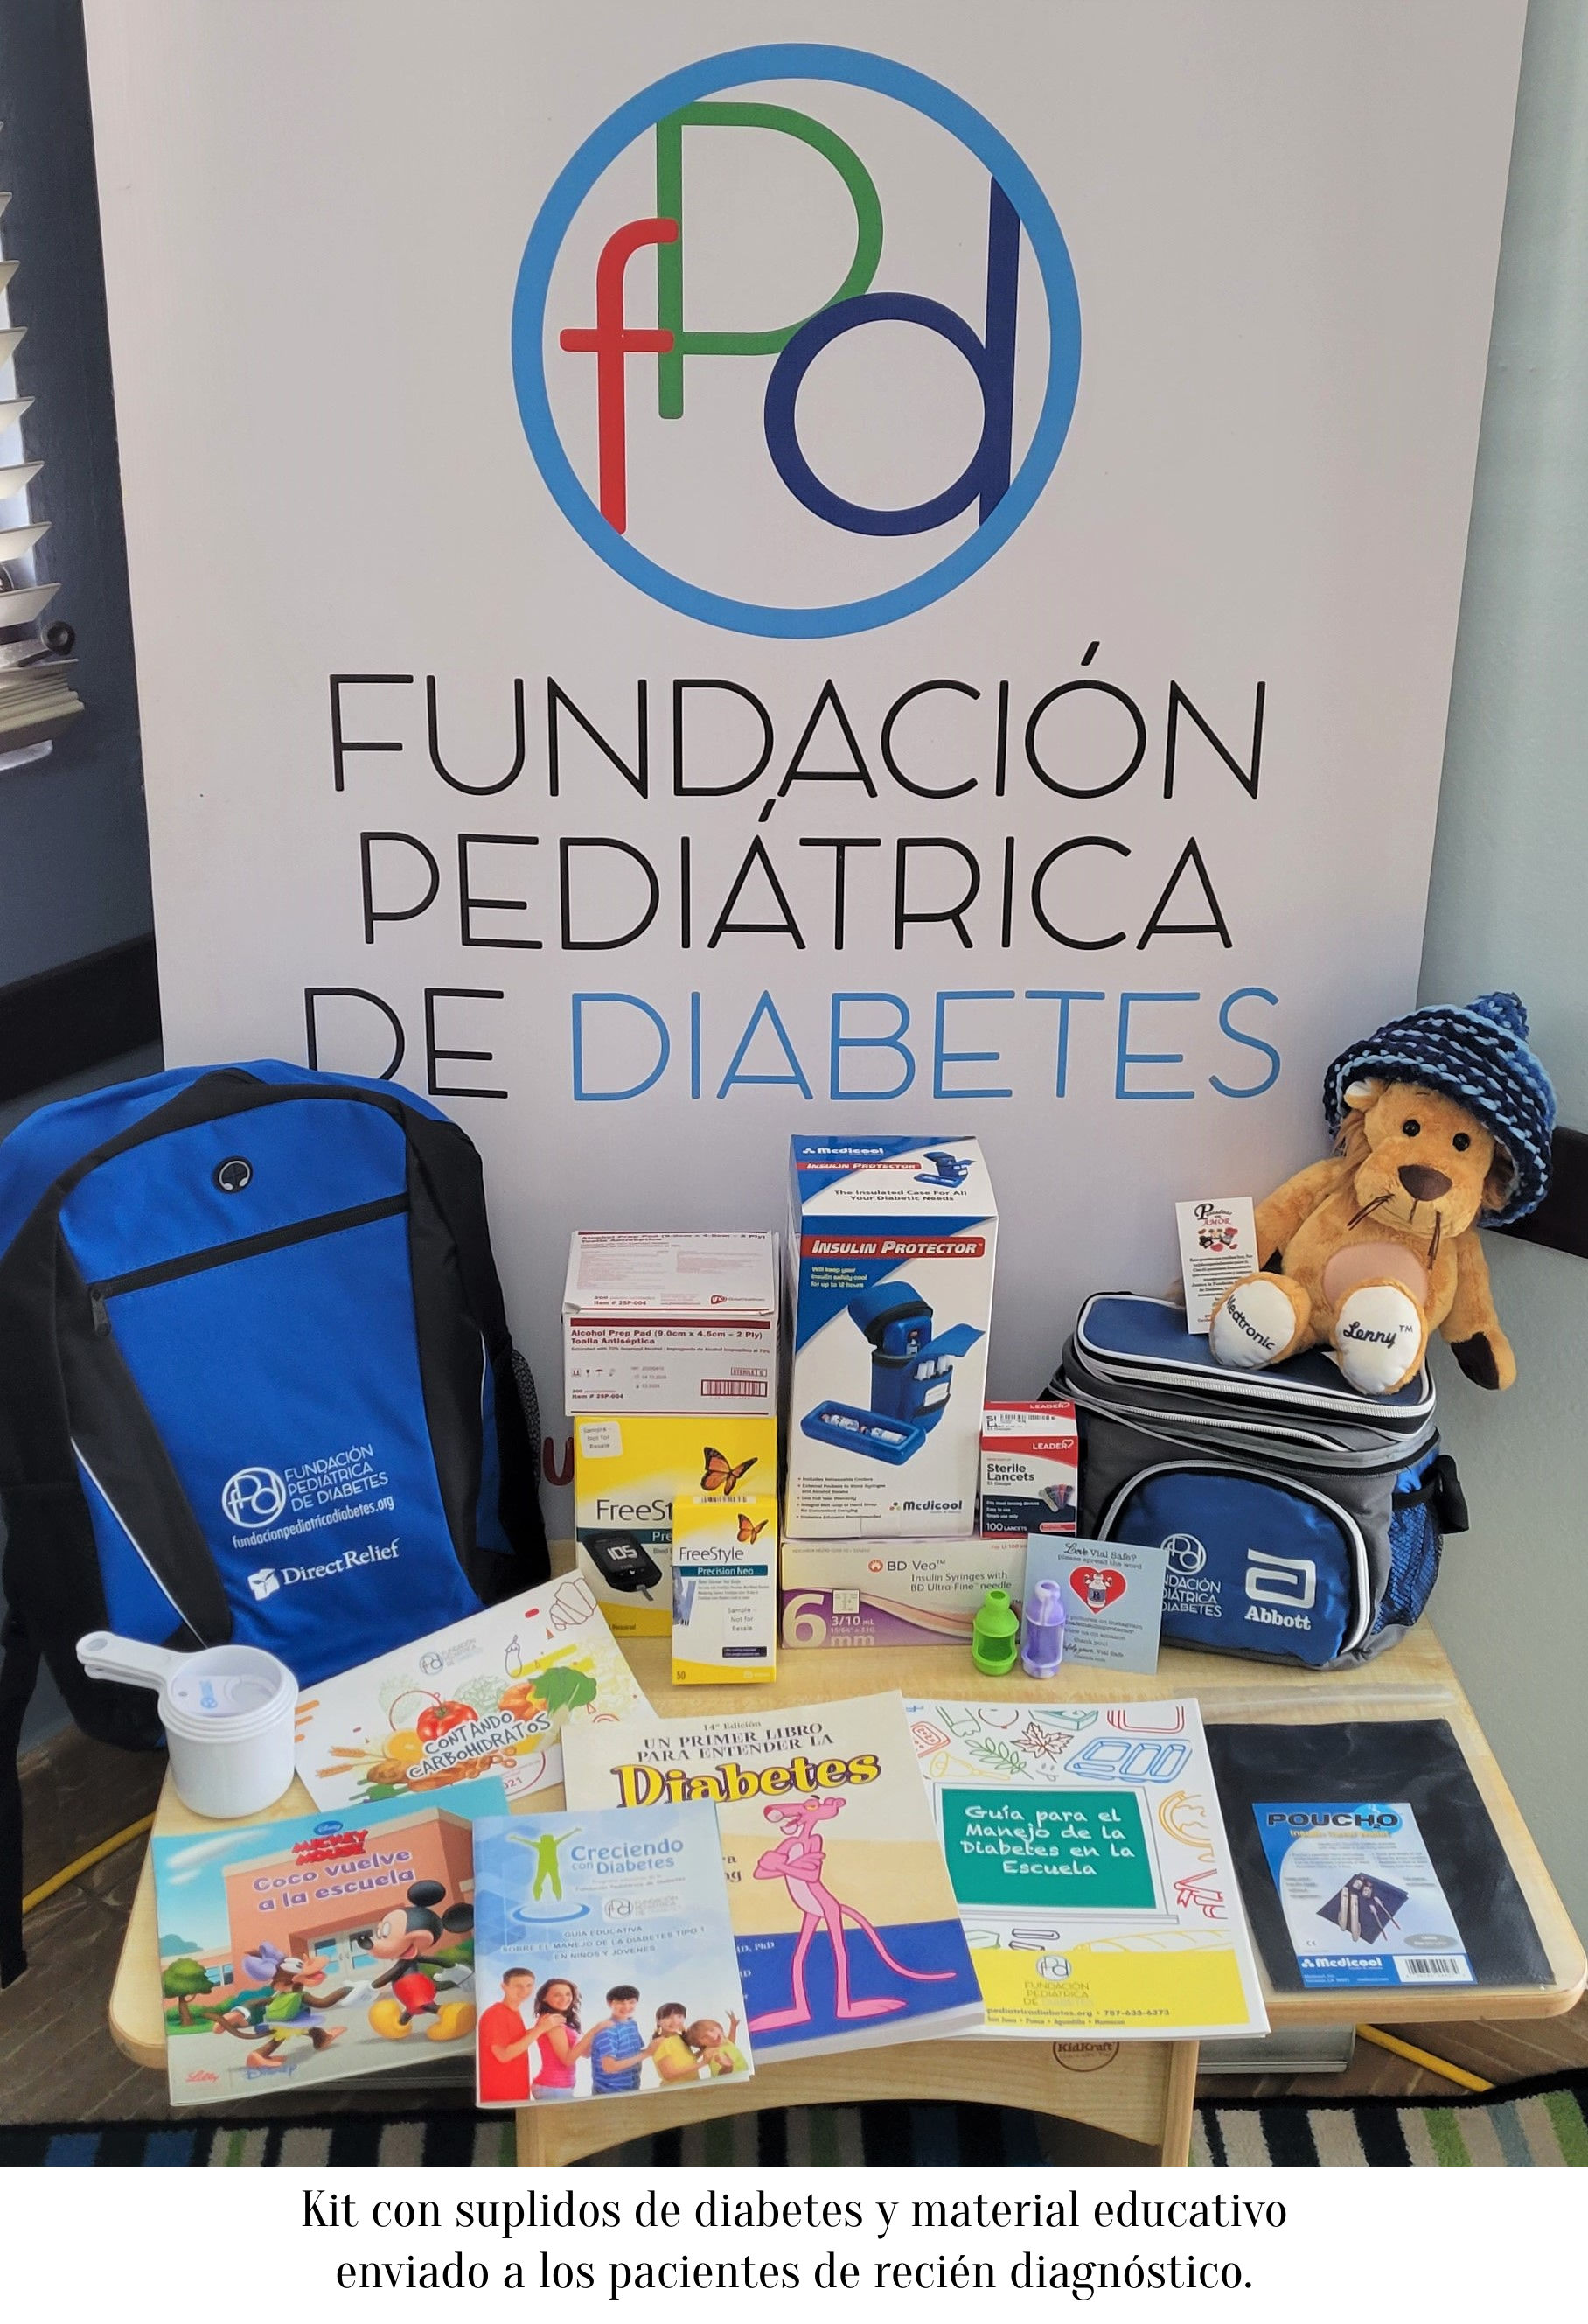 Kit con suplidos de diabetes y material educativo enviado a los pacientes de recién diagnóstico.